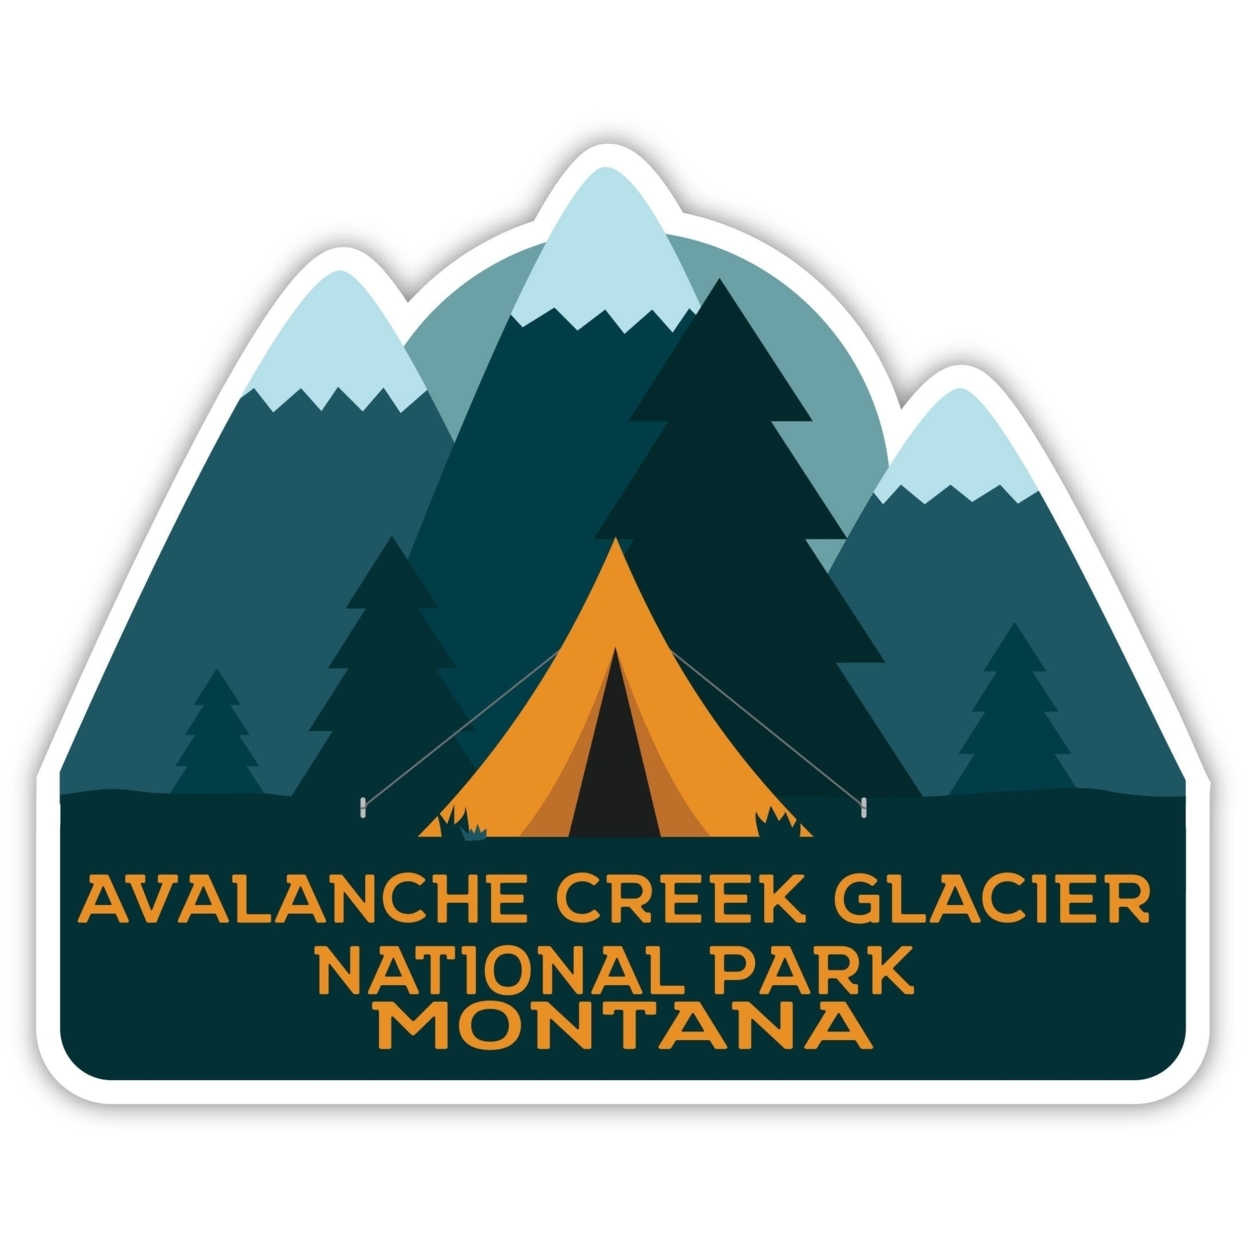 Avalanche Creek Glacier National Park Montana Souvenir Decorative Stickers (Choose Theme And Size) - Single Unit, 8-Inch, Tent